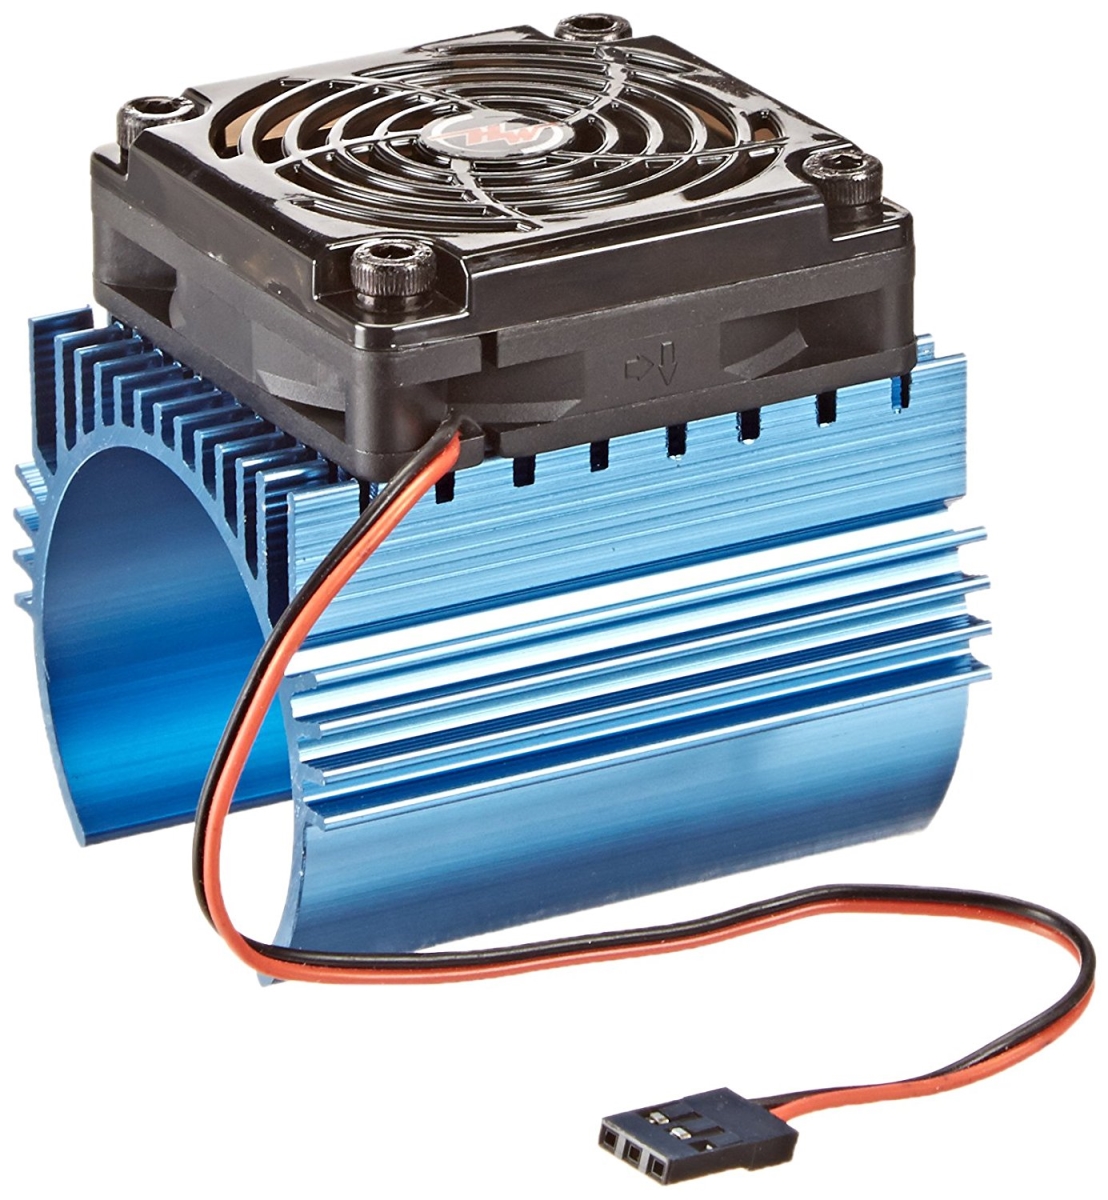 Hwi86080130 C4 Cooling Fan & Heat Sink Combo